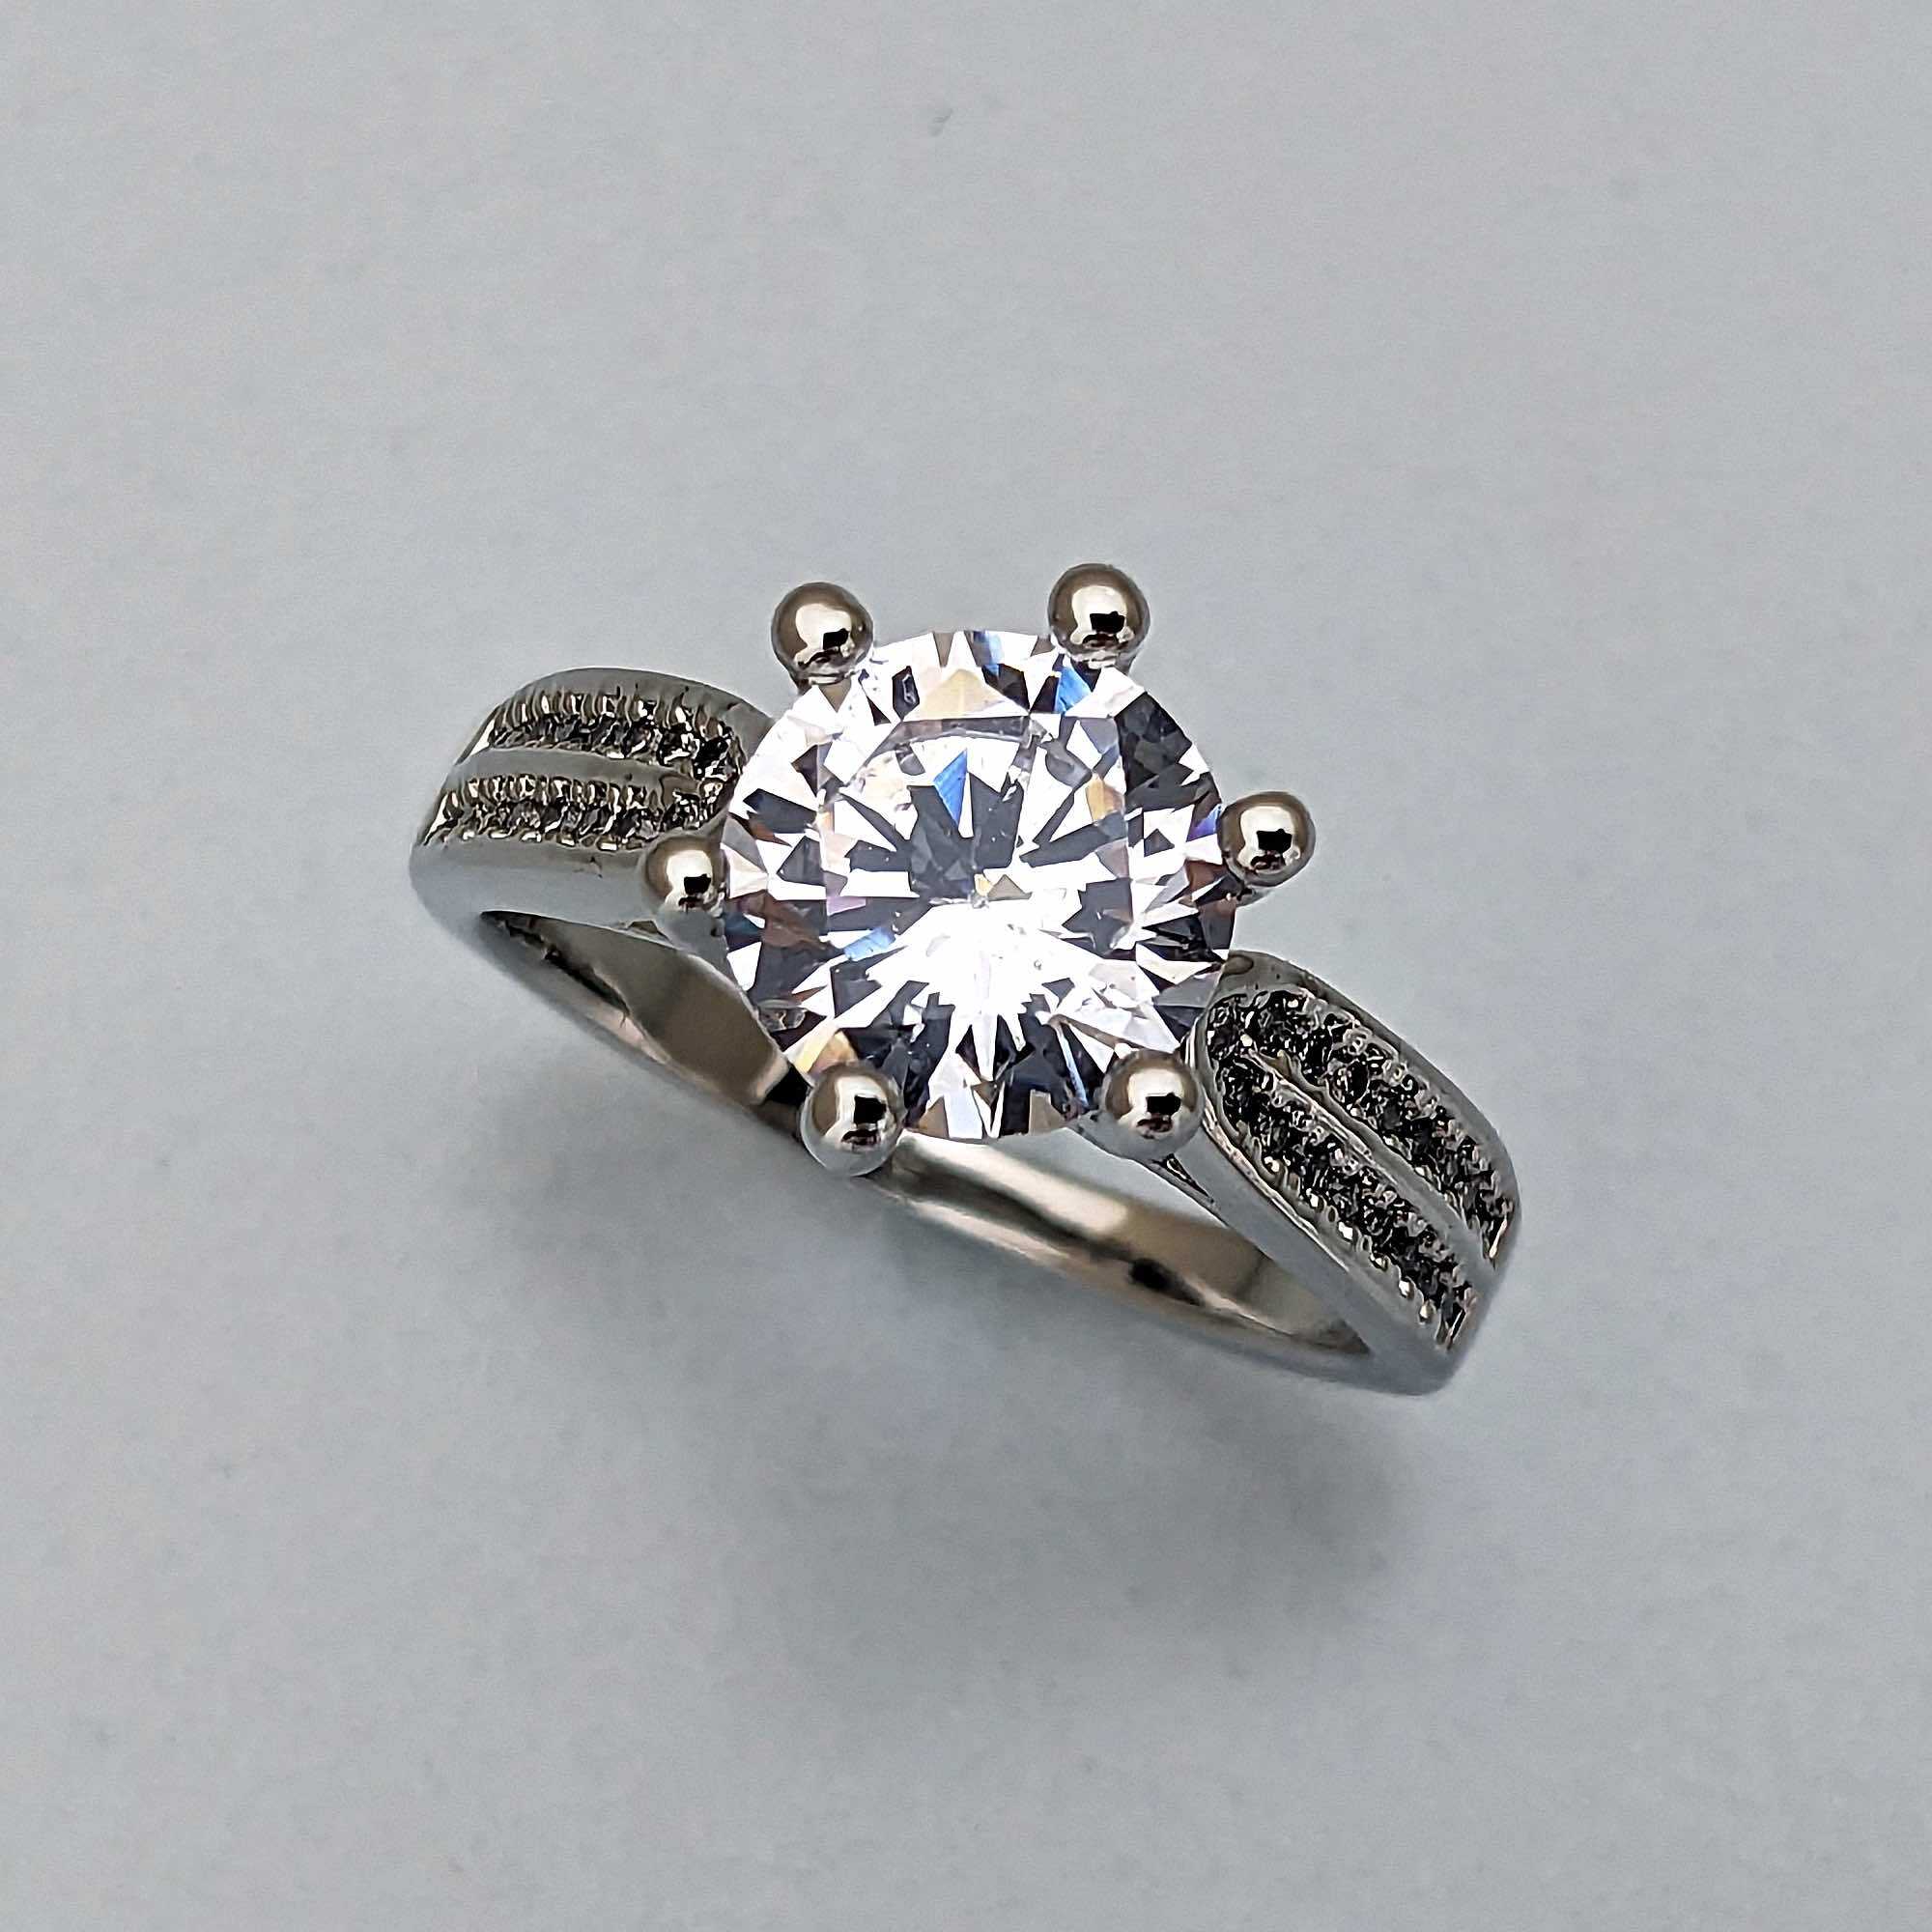 絞り込まれたリングバンドで２カラットダイヤモンドの大きさを強調する婚約指輪